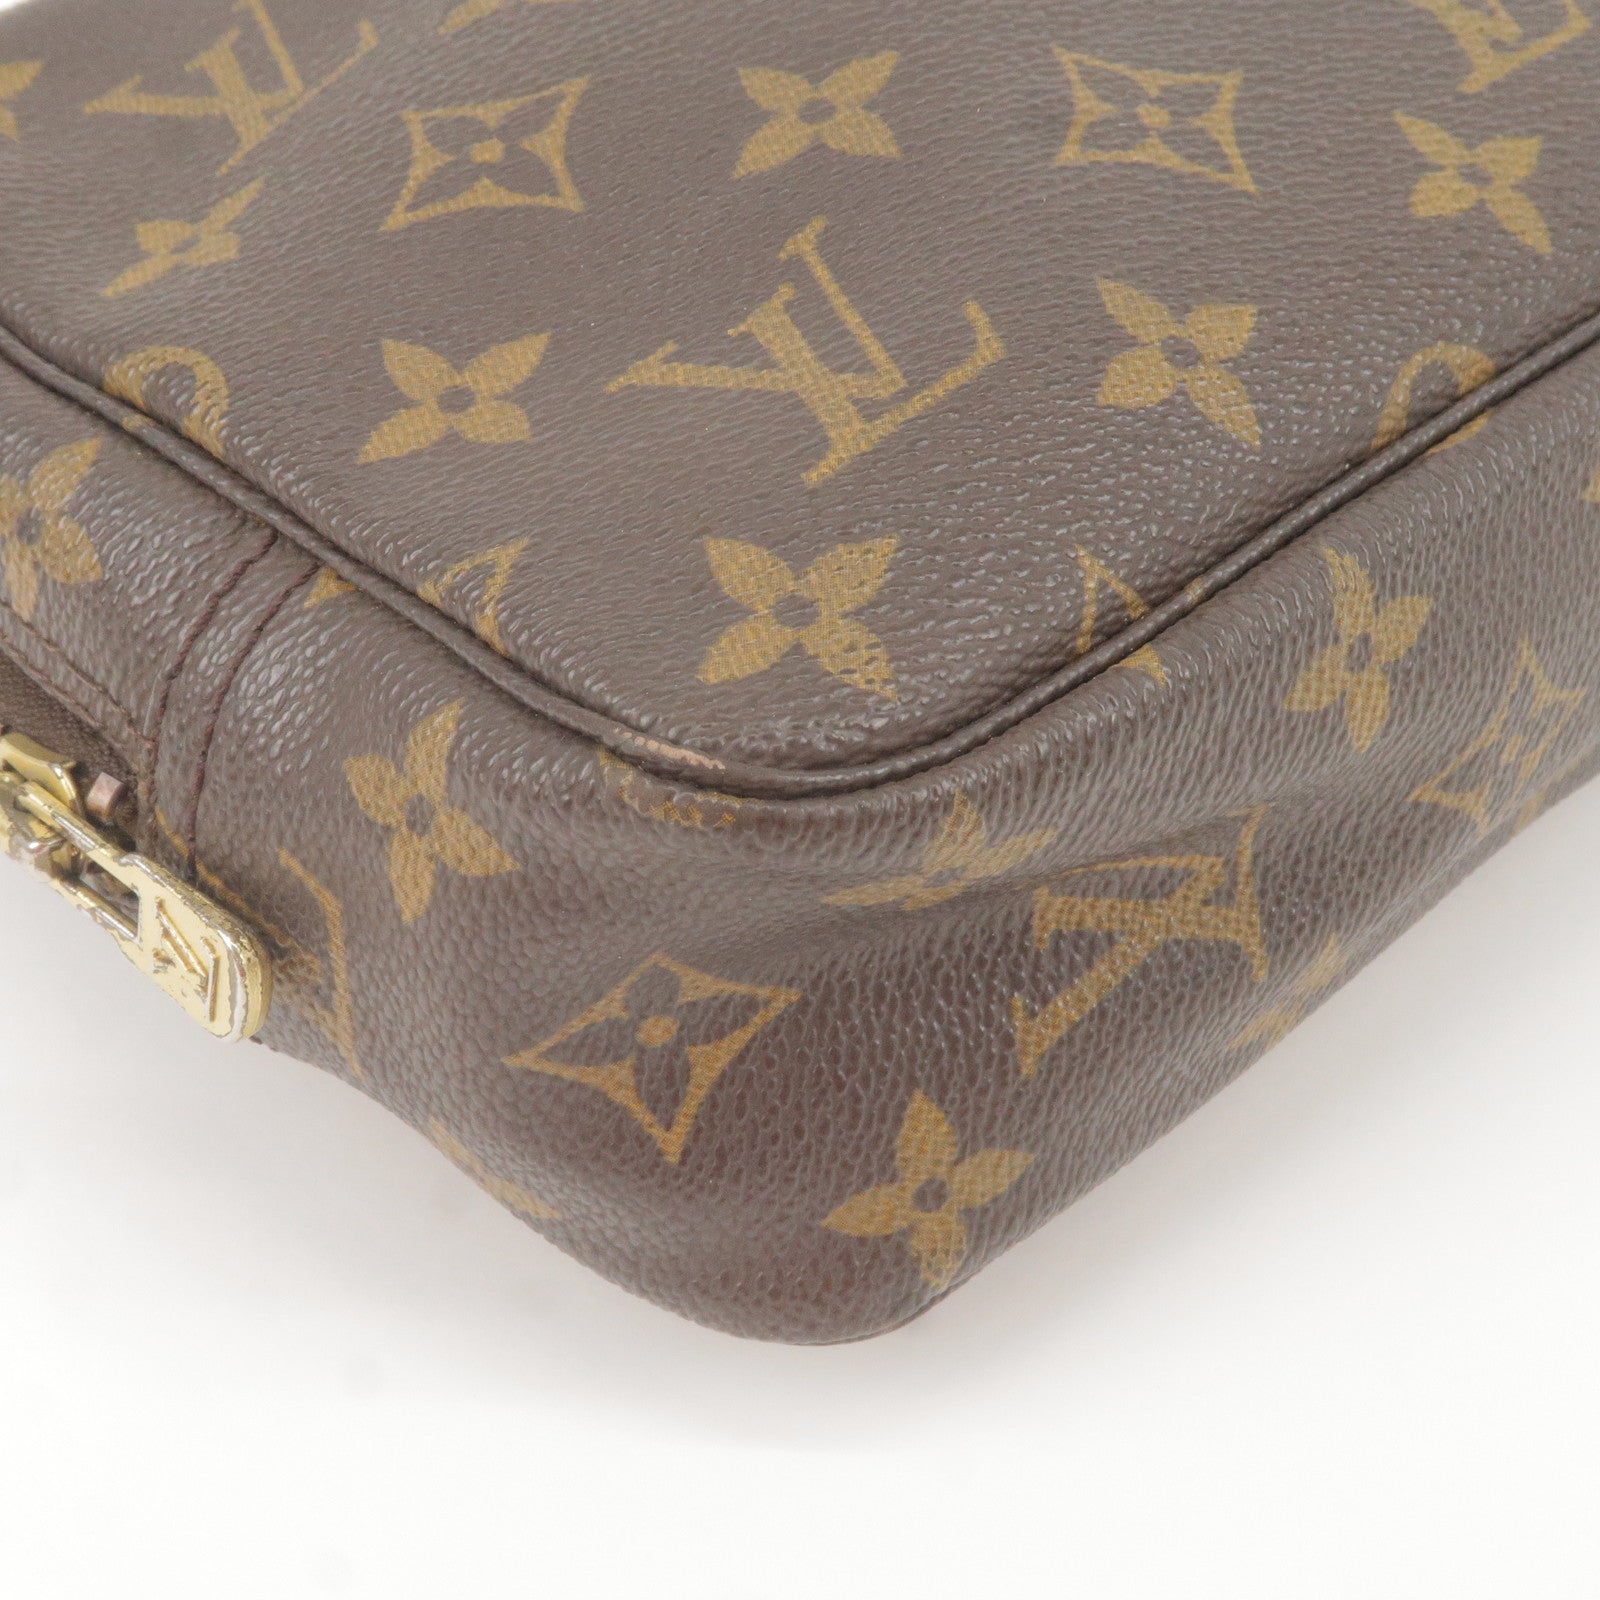 Louis Vuitton Trousse de Toilette Brown Canvas Handbag (Pre-Owned)